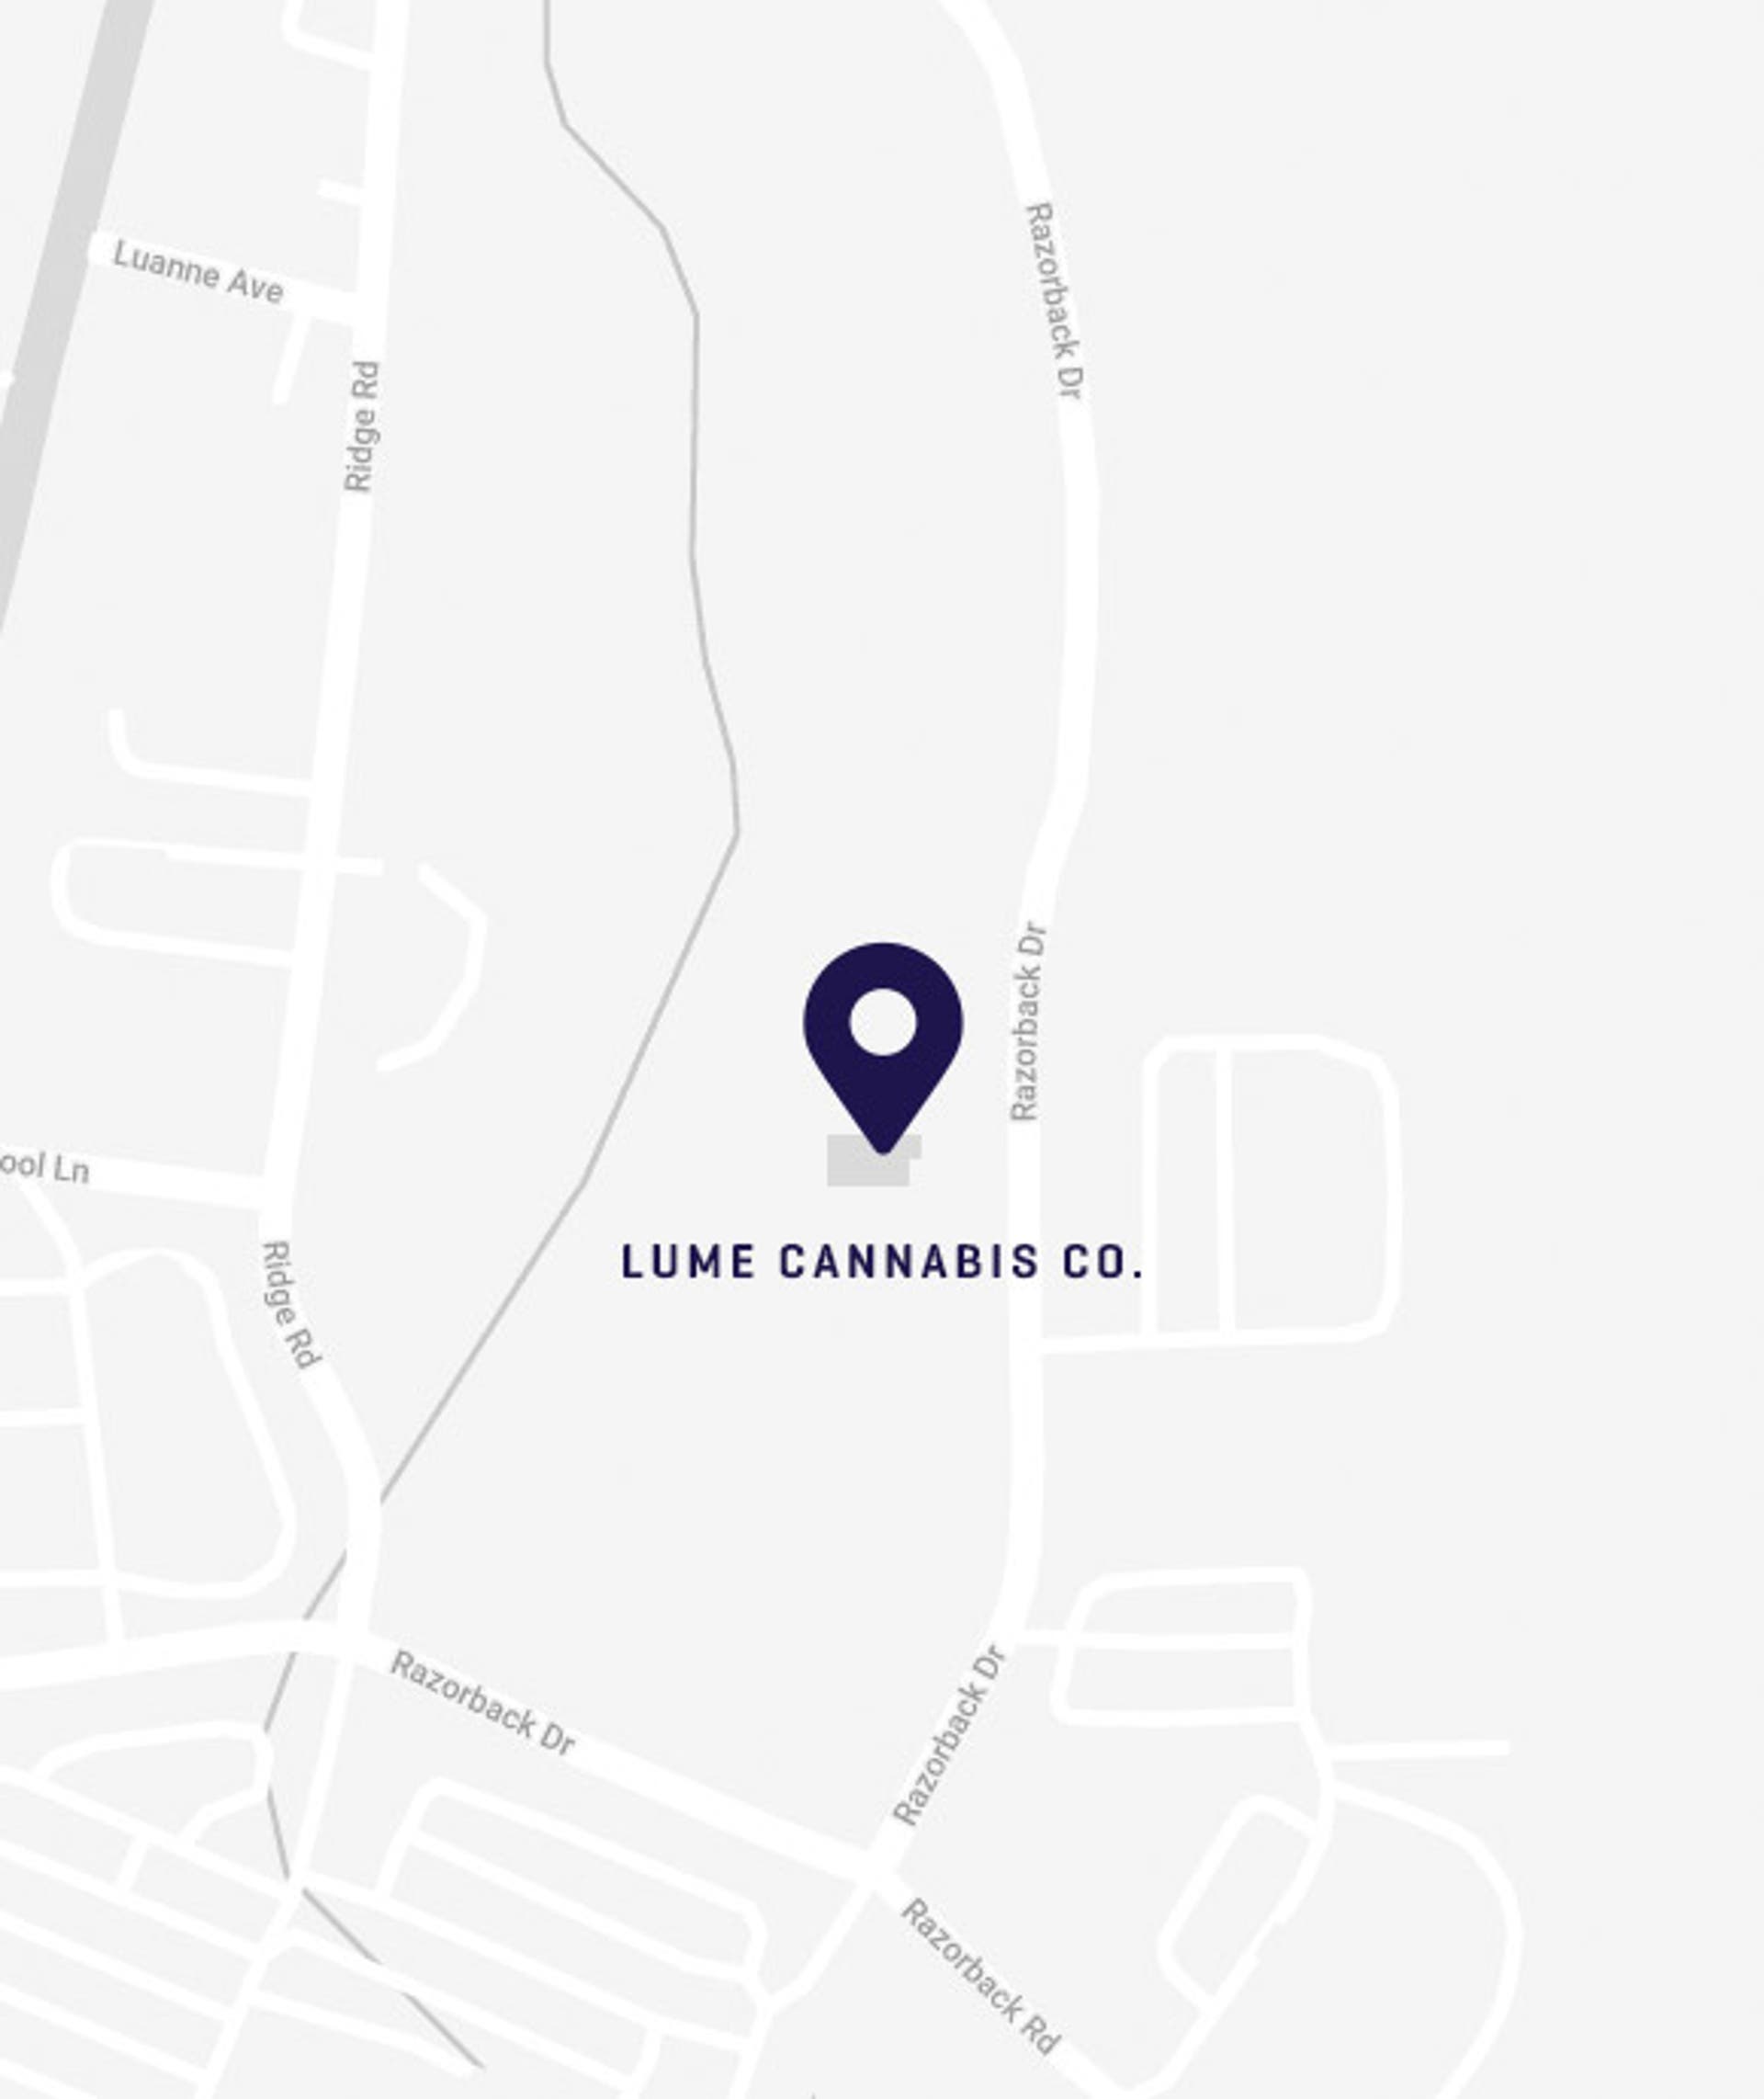 Lume Cannabis location in Cheboygan MI